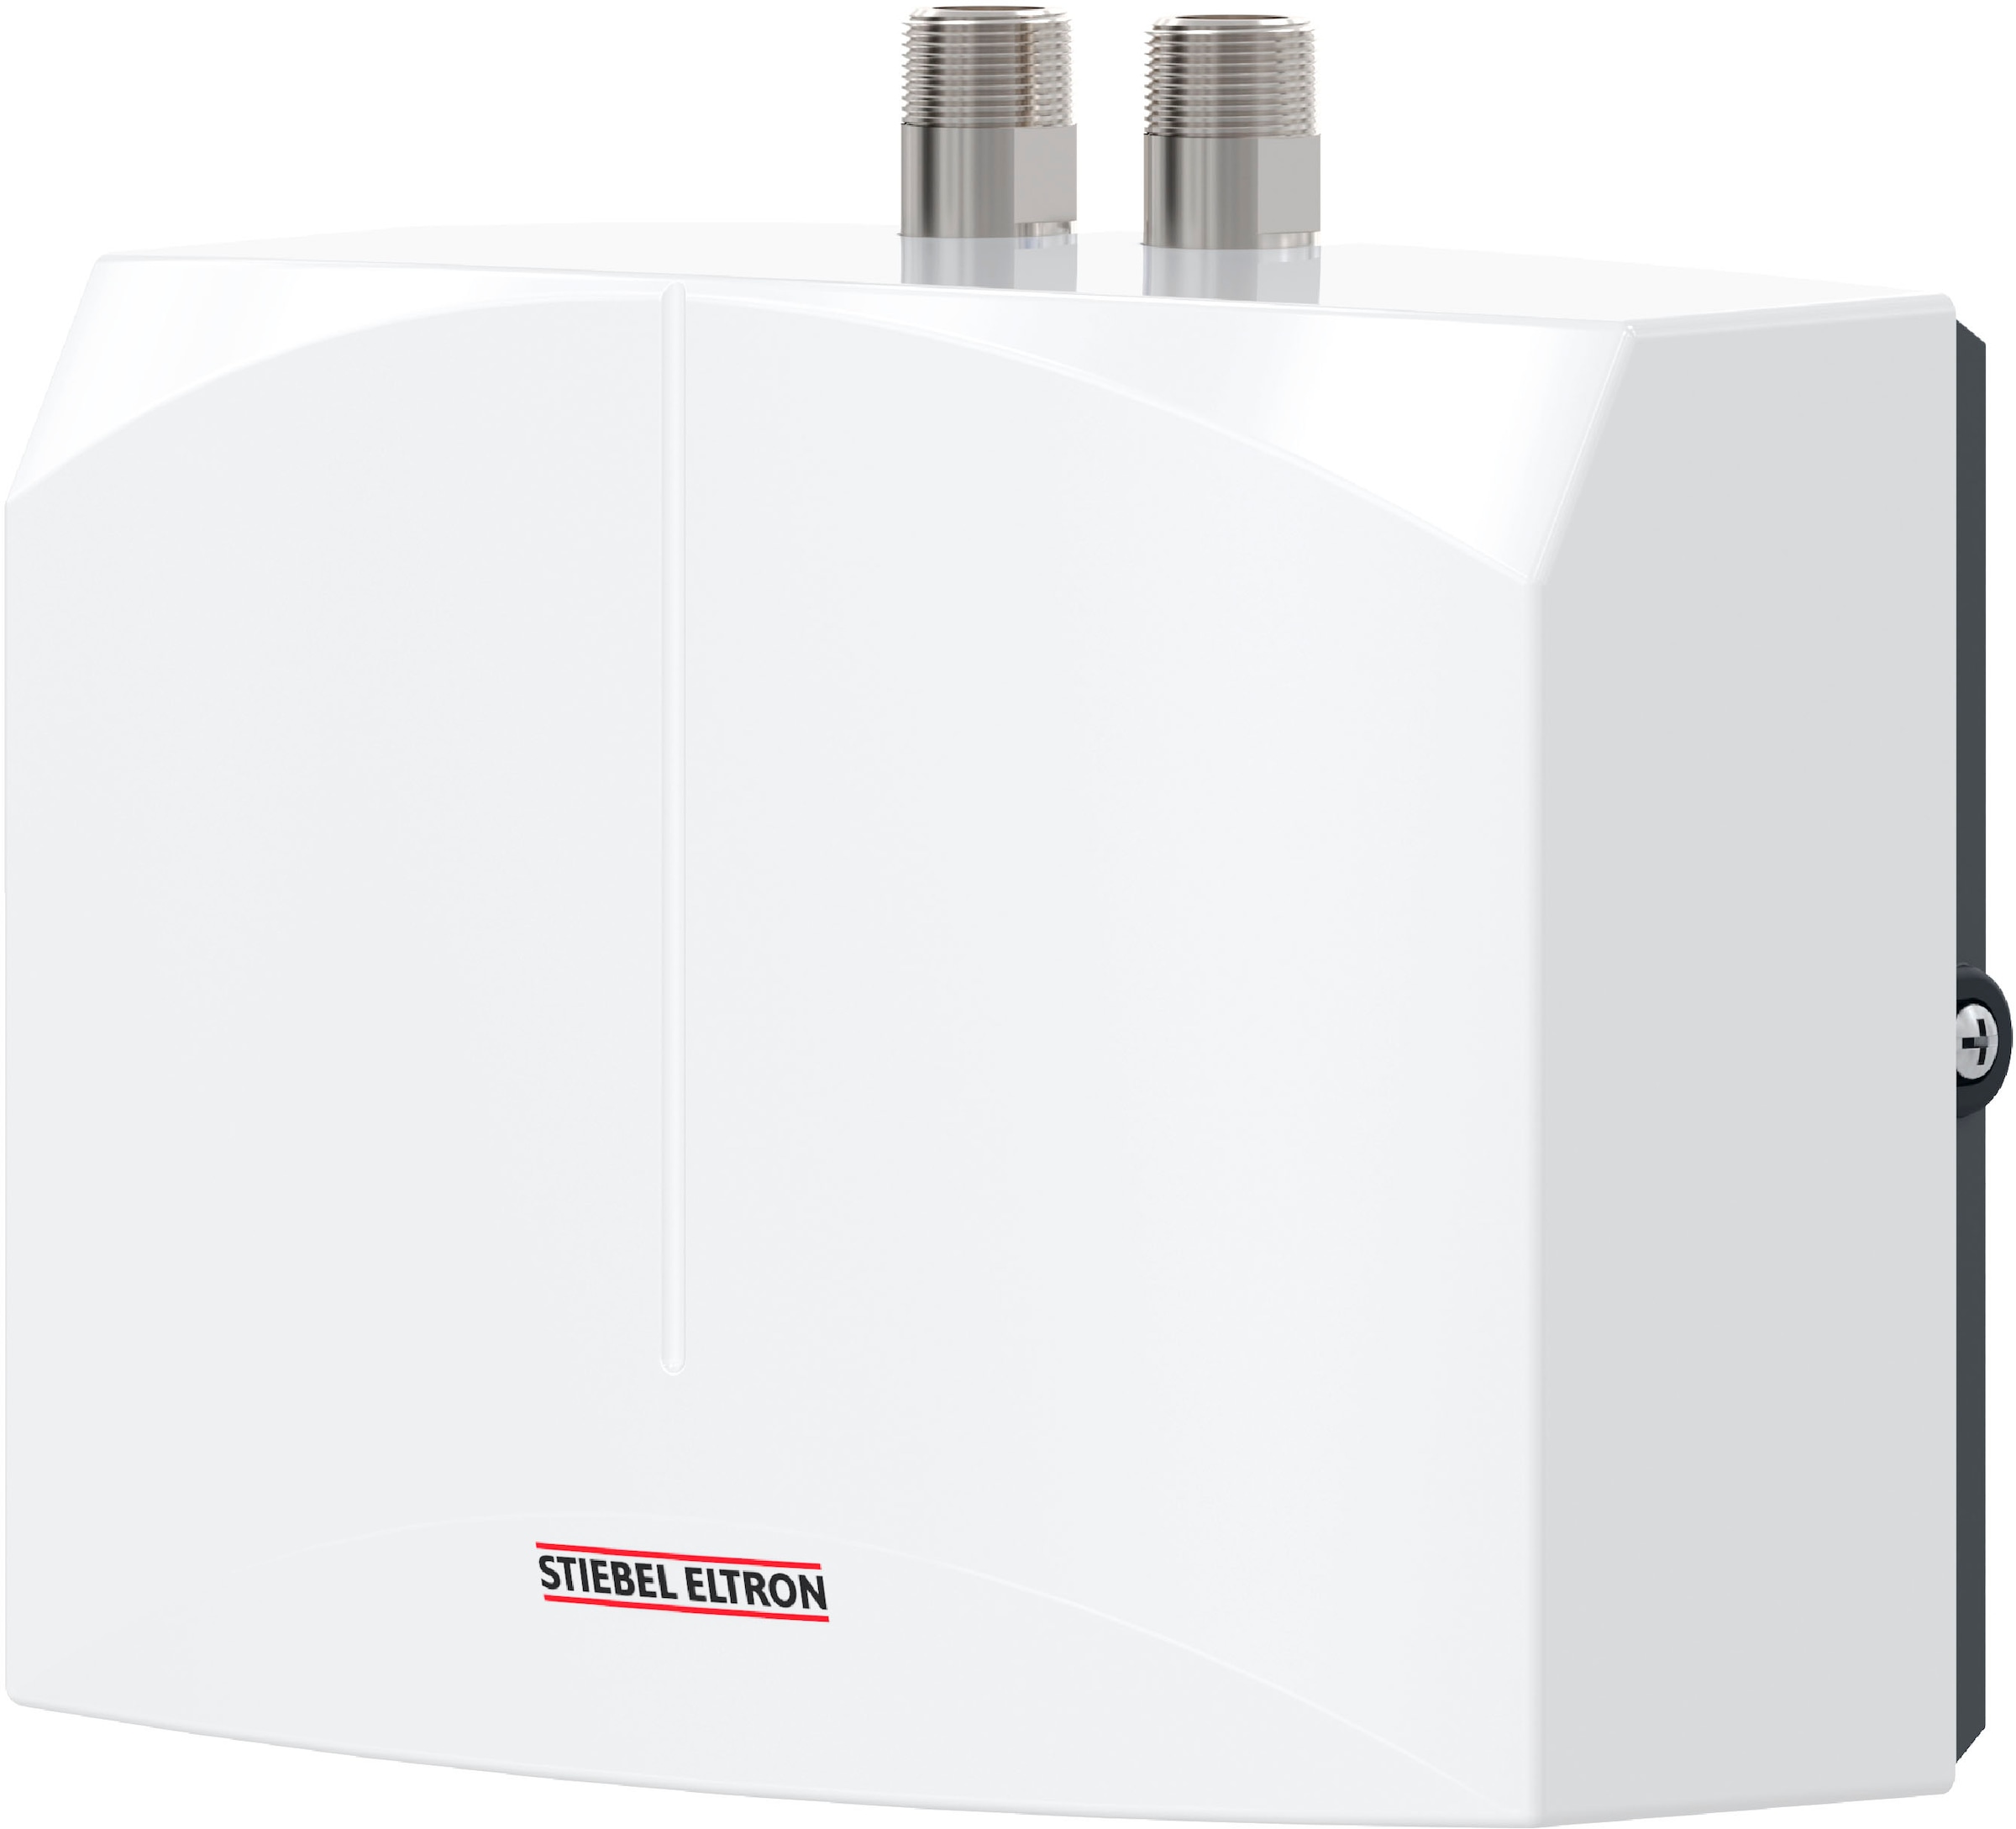 STIEBEL ELTRON Klein-Durchlauferhitzer »DEM 3«, elektronisch, für Handwaschbecken, 3,5 kW, mit Stecker